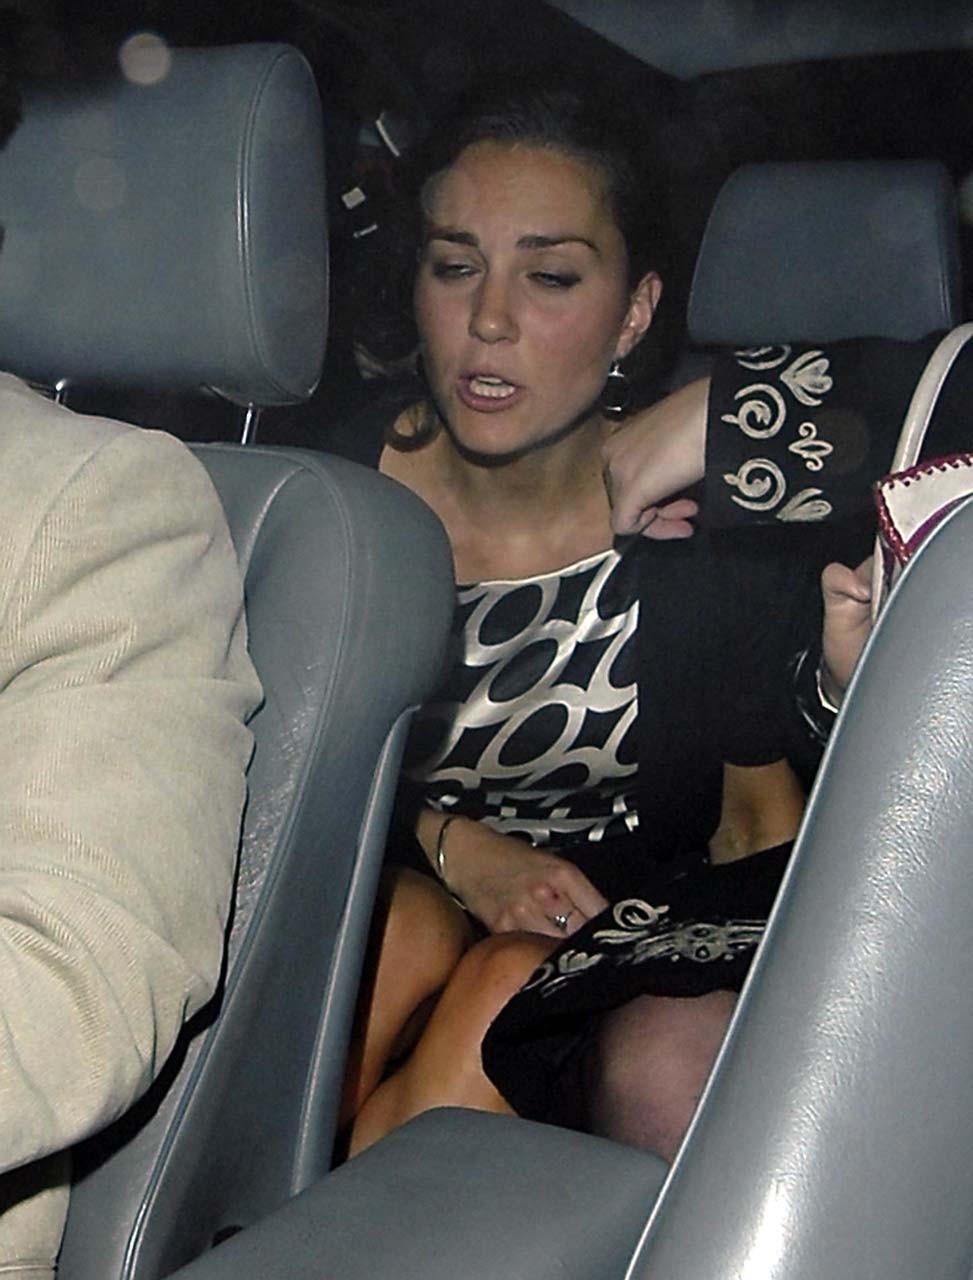 Princess Kate Middleton flashing her panties upskirt in car paparazzi pictures #75306448